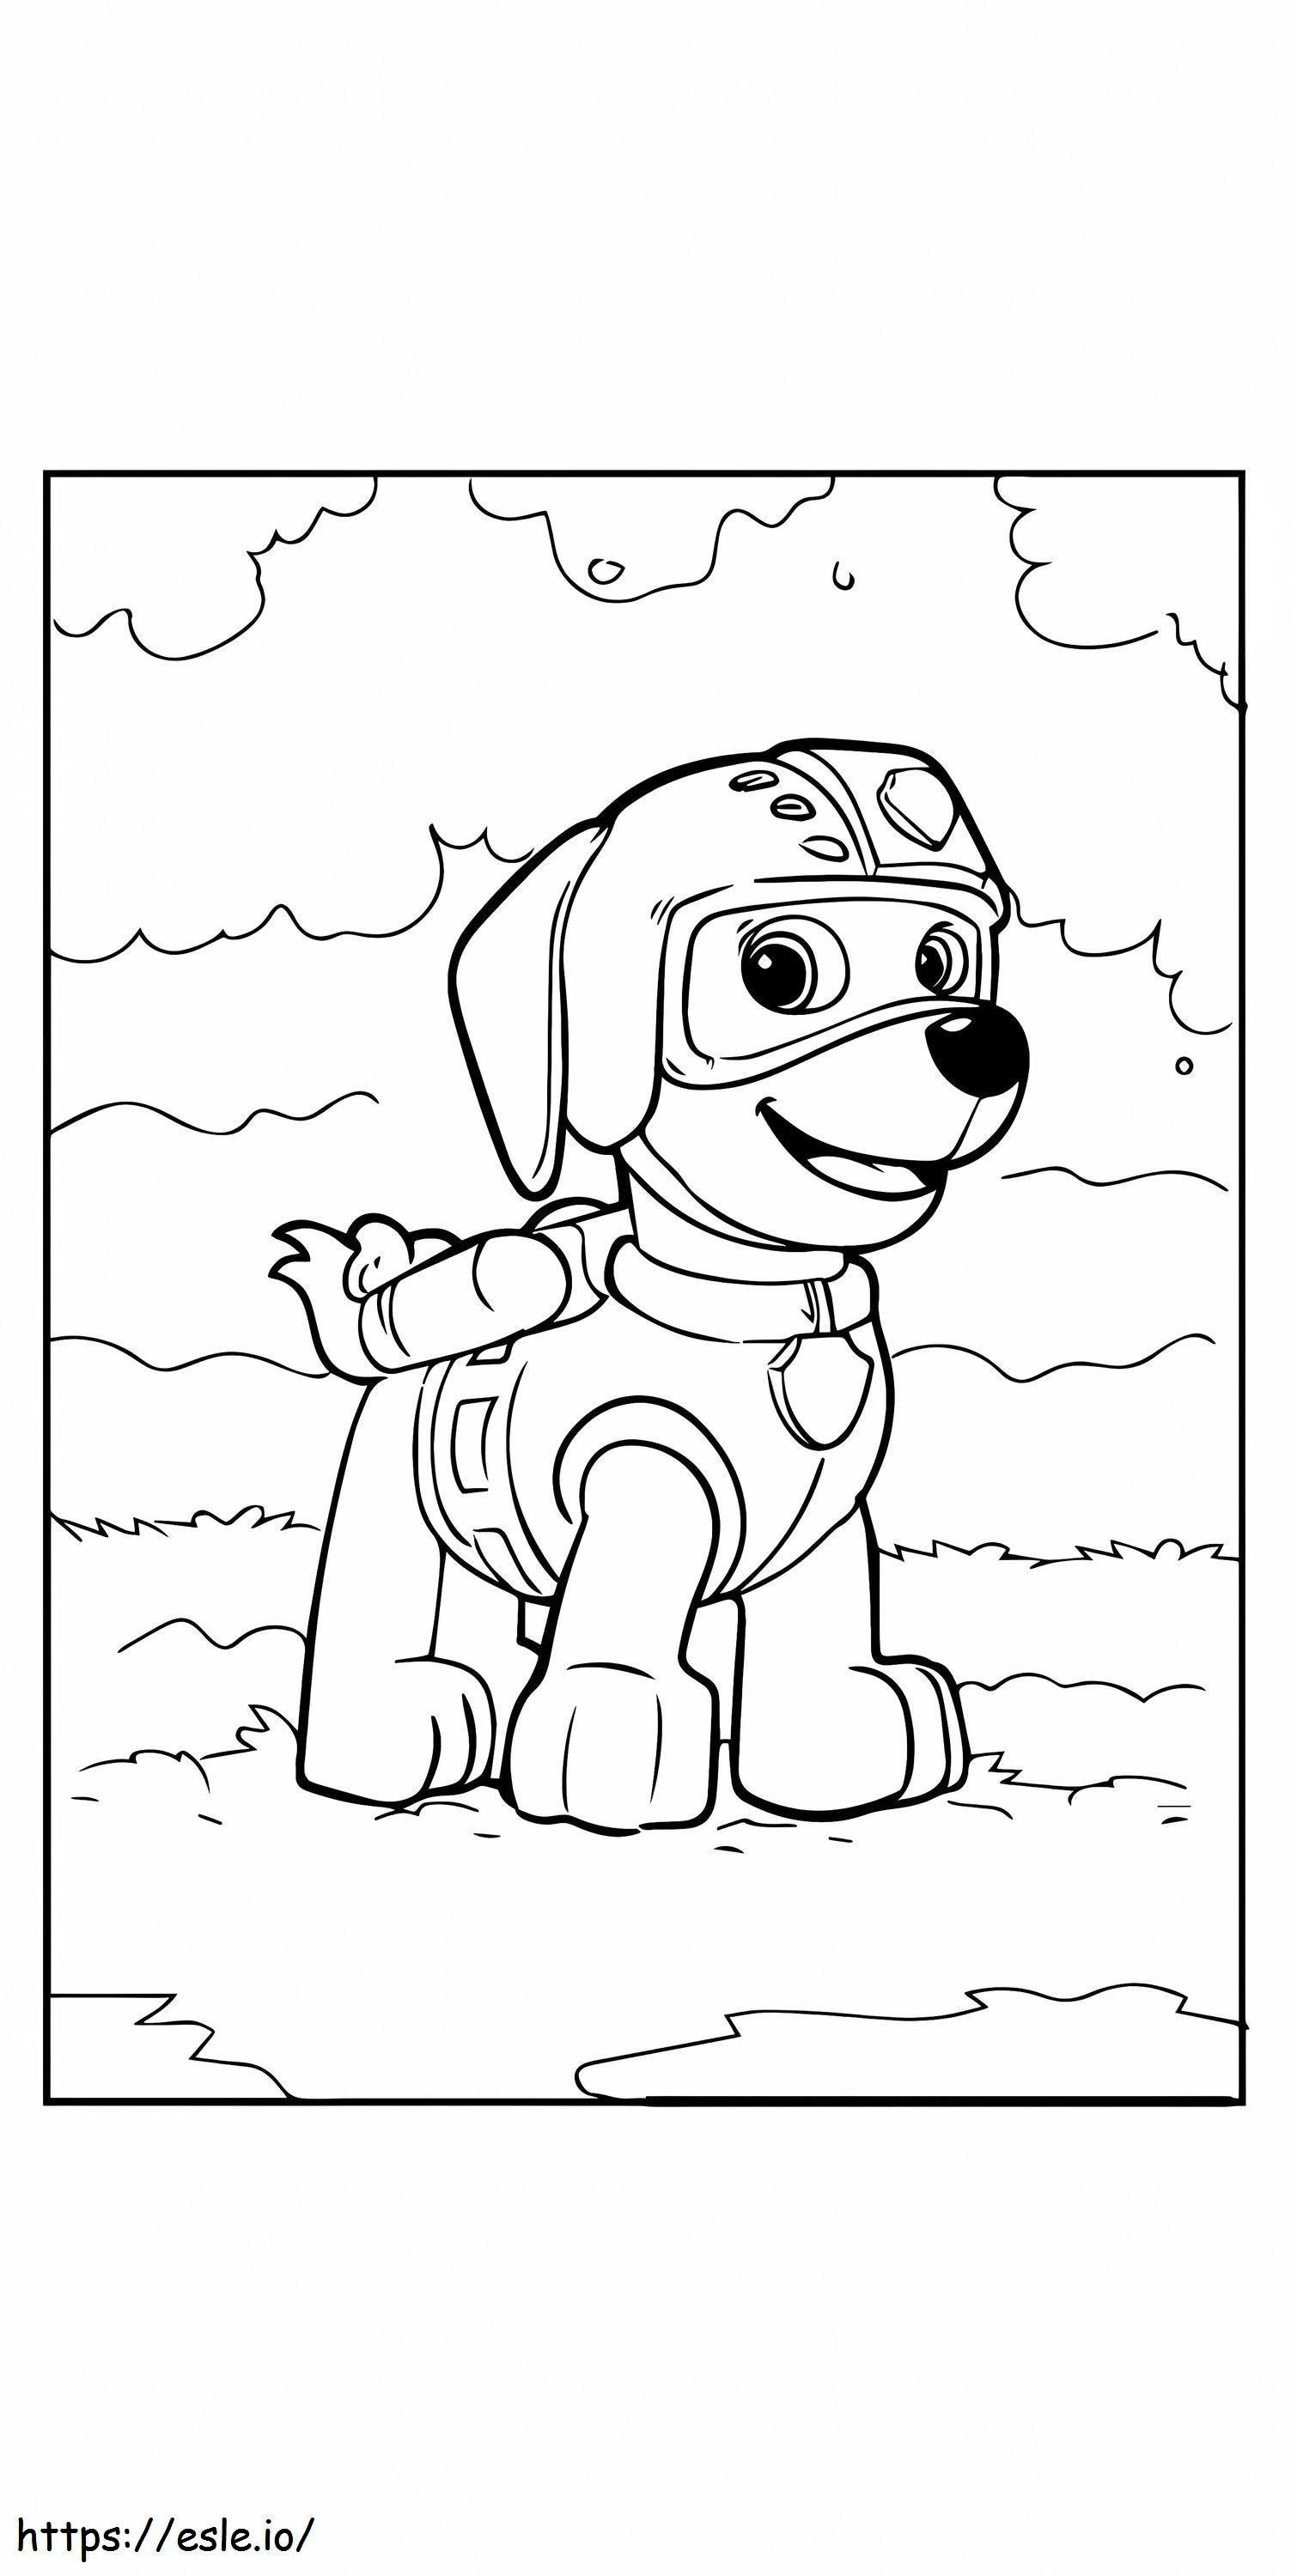 Coloriage Paw Patrol Mighty Pups Skye pour enfants à imprimer dessin